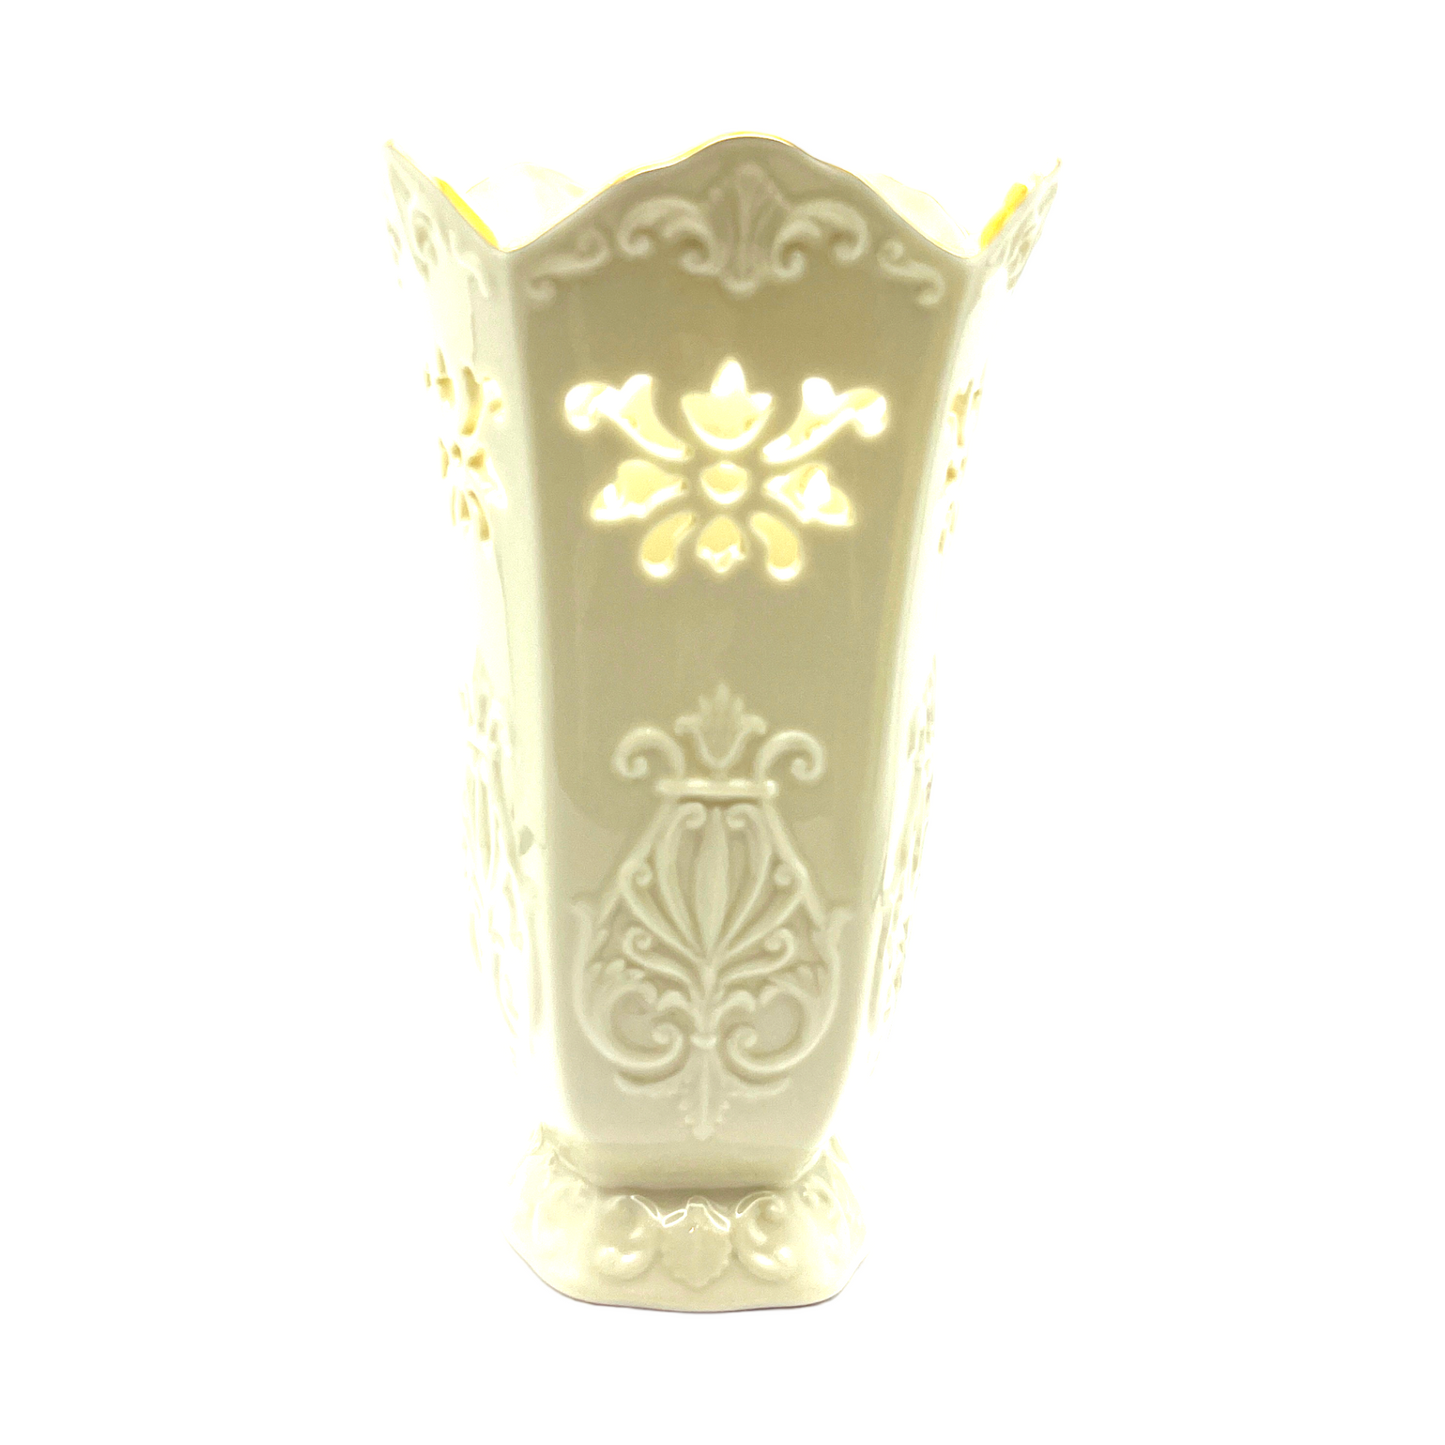 Lenox - Vase - Langtry Collection - 24K Gold Trim - Vintage - 7"